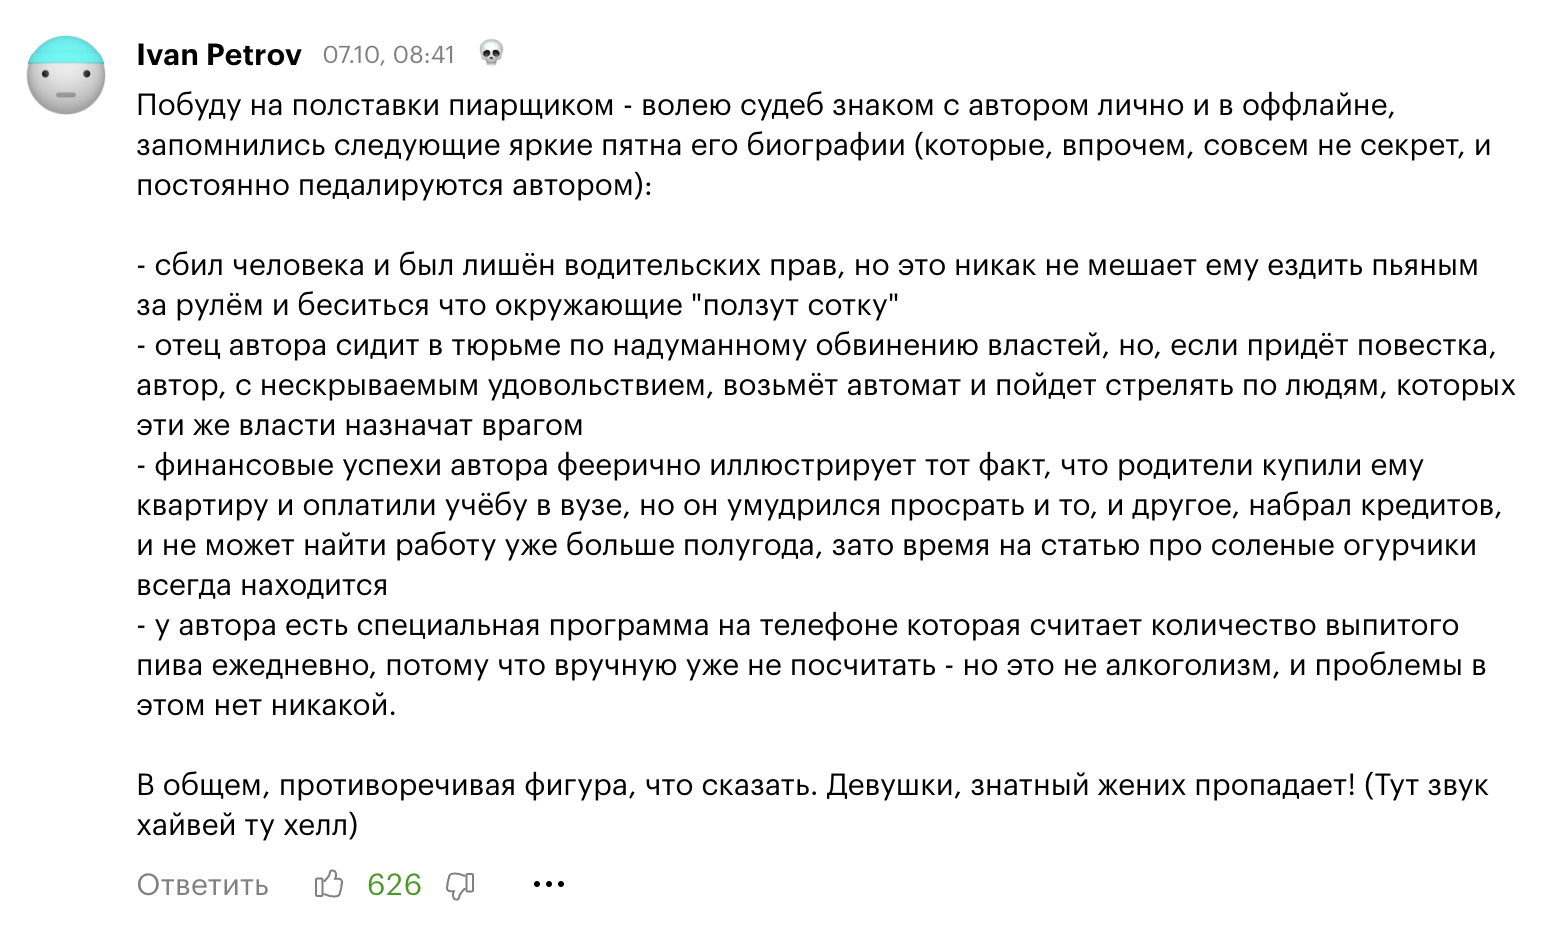 620 лайков у комментария к дневнику руководителя проектов из Москвы